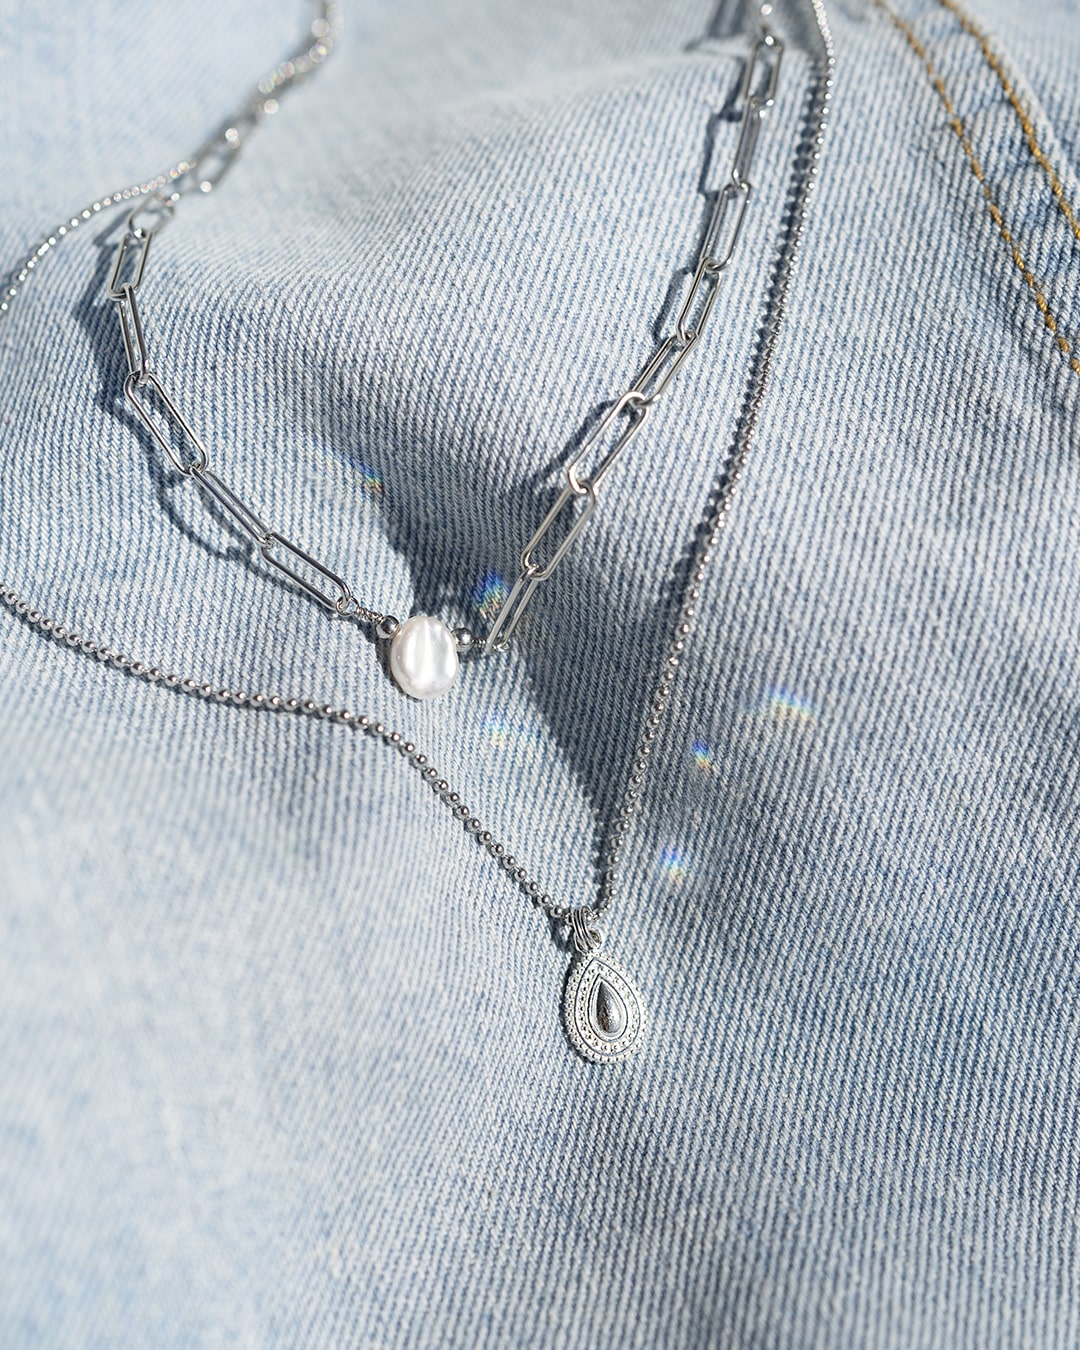 Arko Silver Necklace